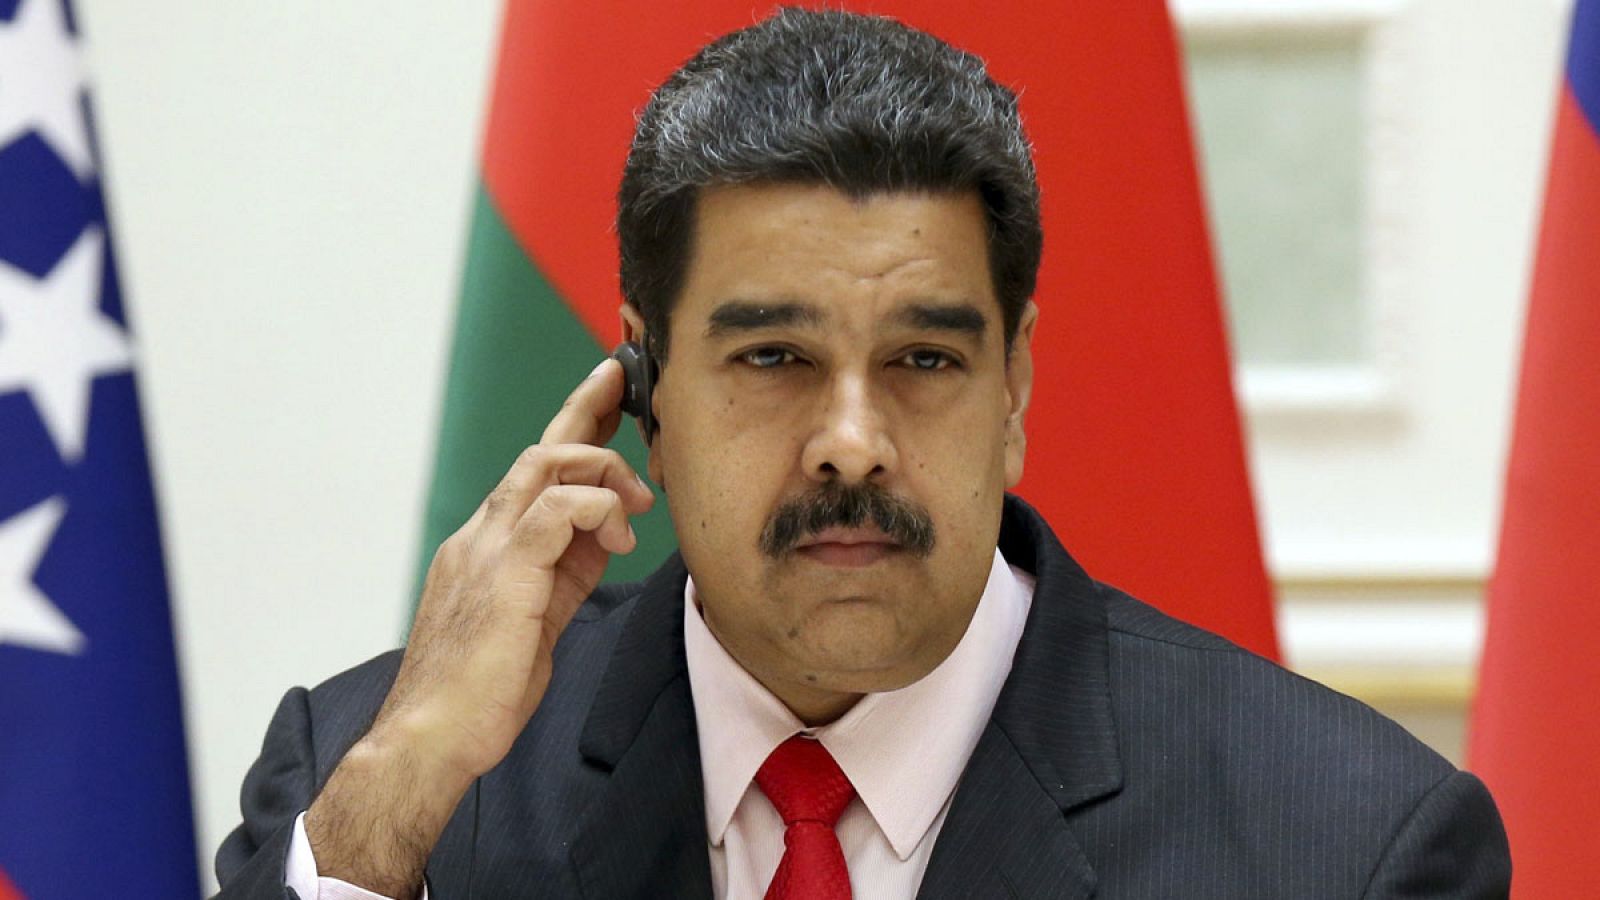 El presidente de Venezuela, Nicolás Maduro, durante una visita a Bielorrusia